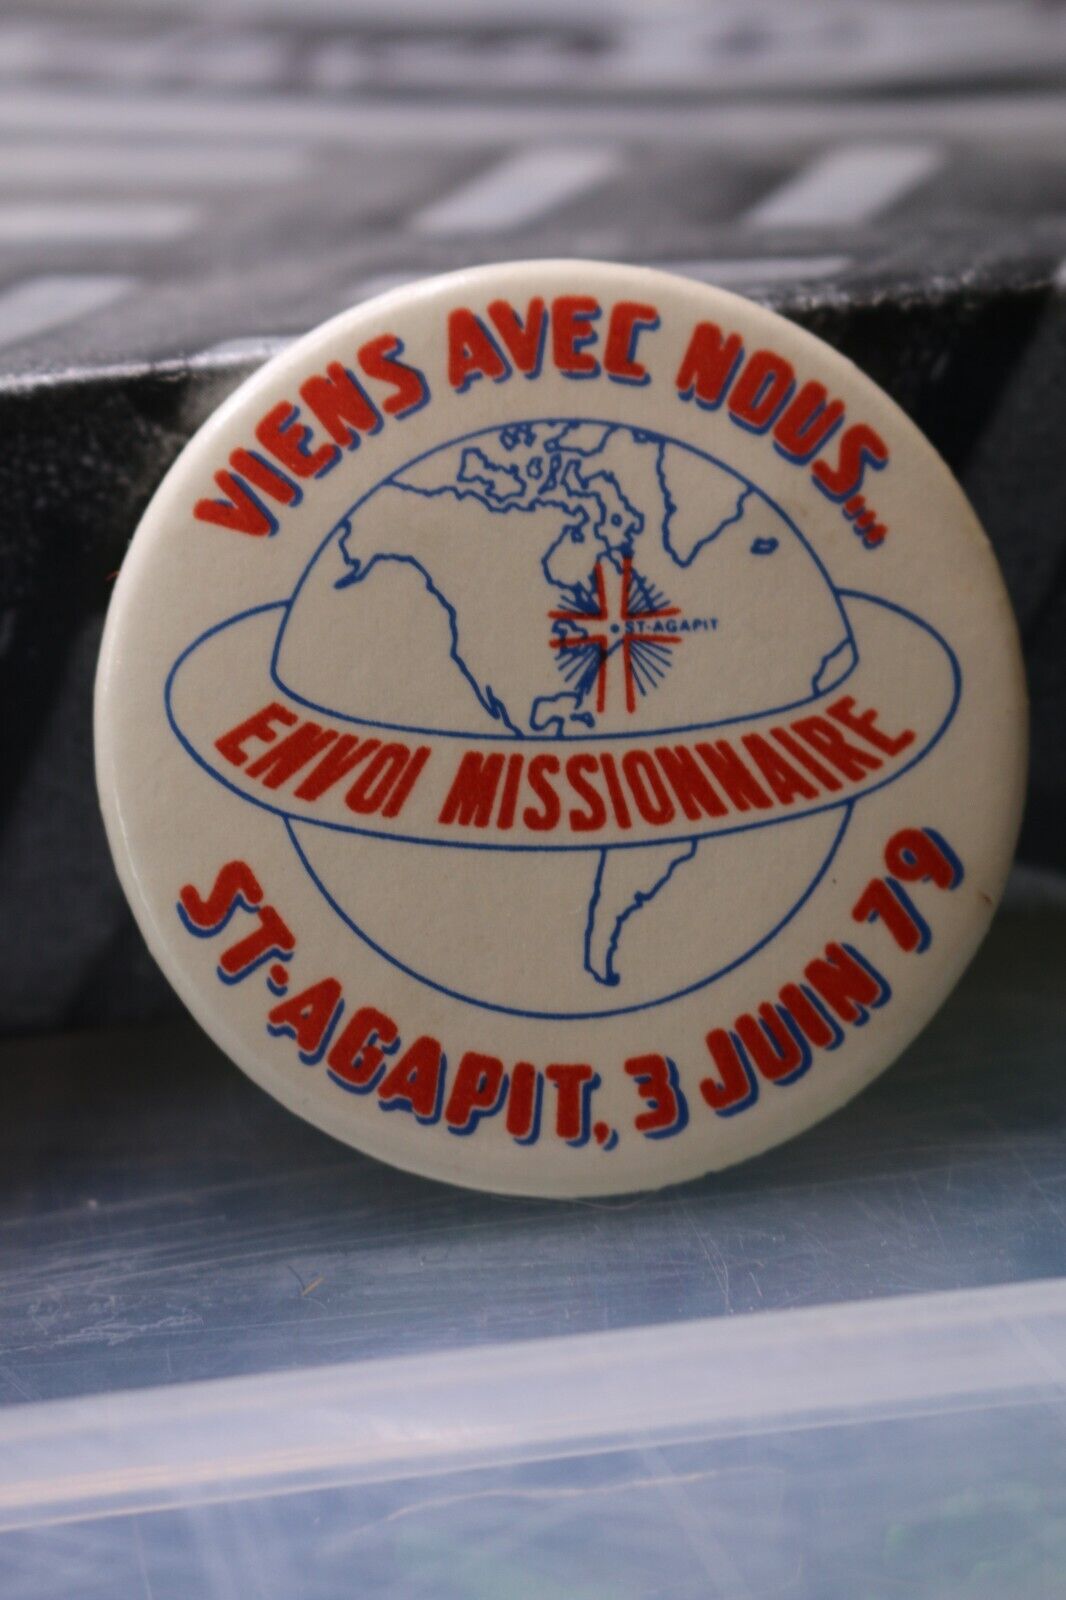 Vintage Macaron Pinback Québec Viens Avec Nous Envoi Missionnaire 1979 St-Agapit